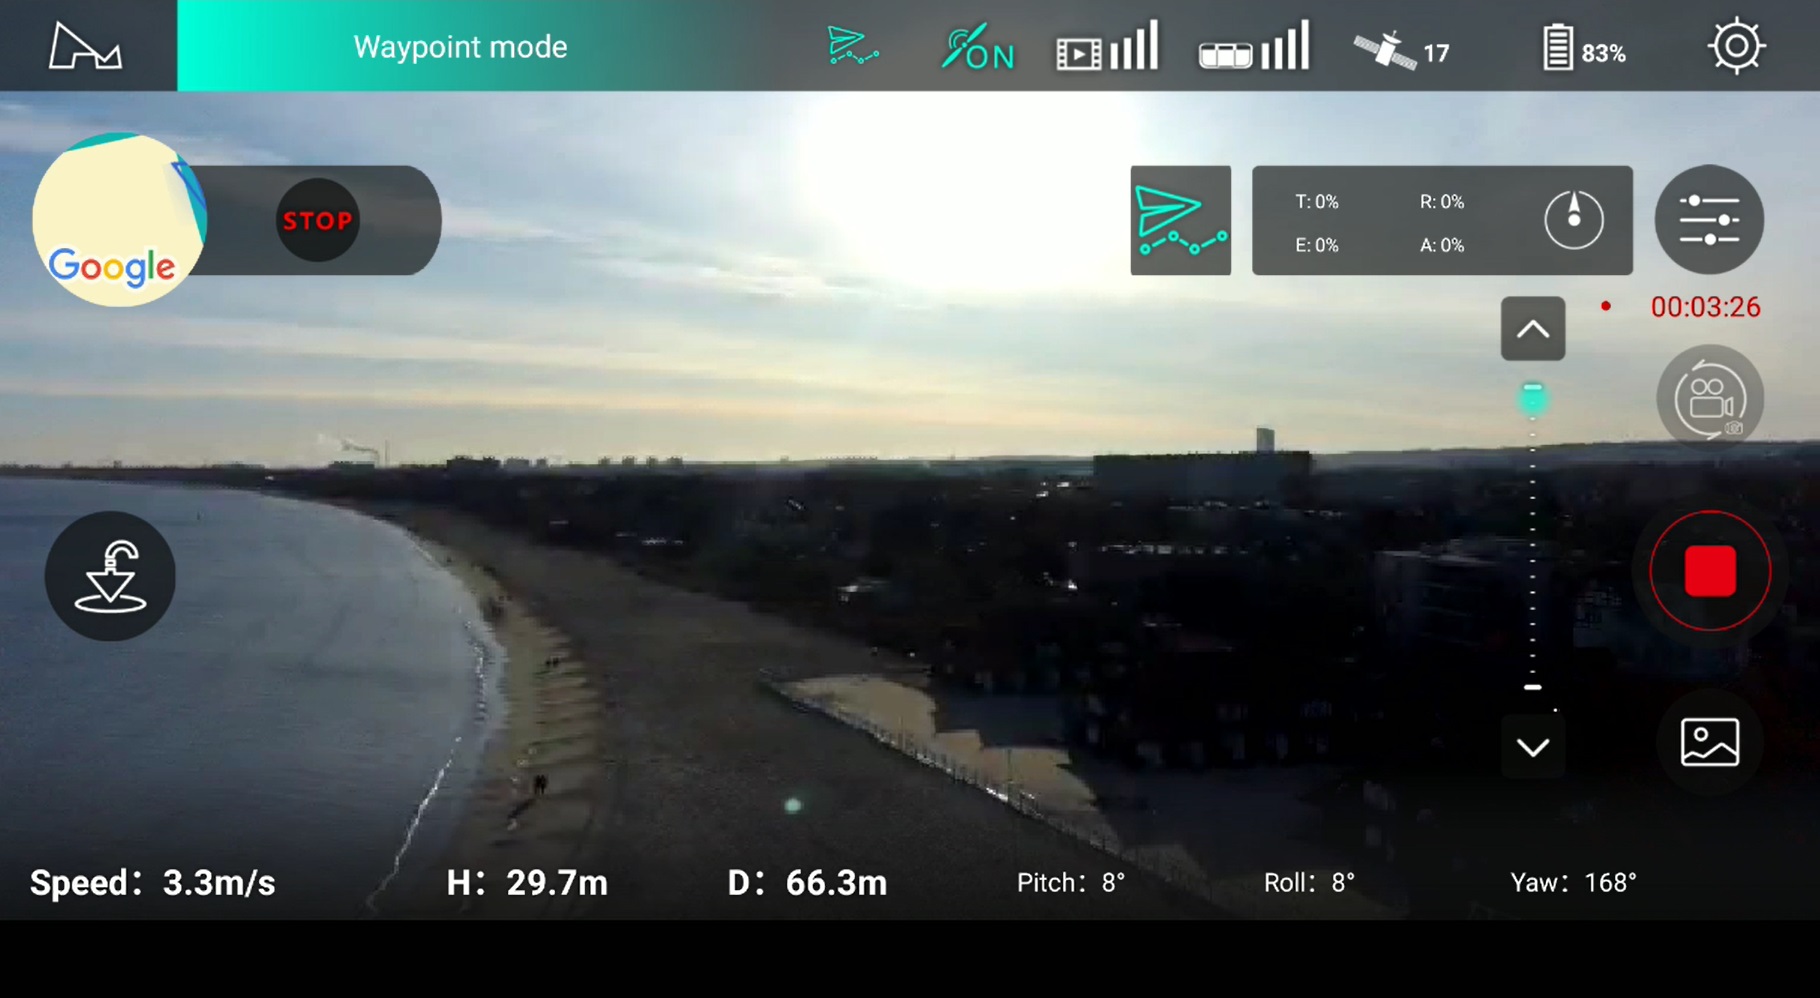 Hubsan Zino PRO - recenzja drona z kamerą 4K i zasięgiem aż 4 km - widok w aplikacji